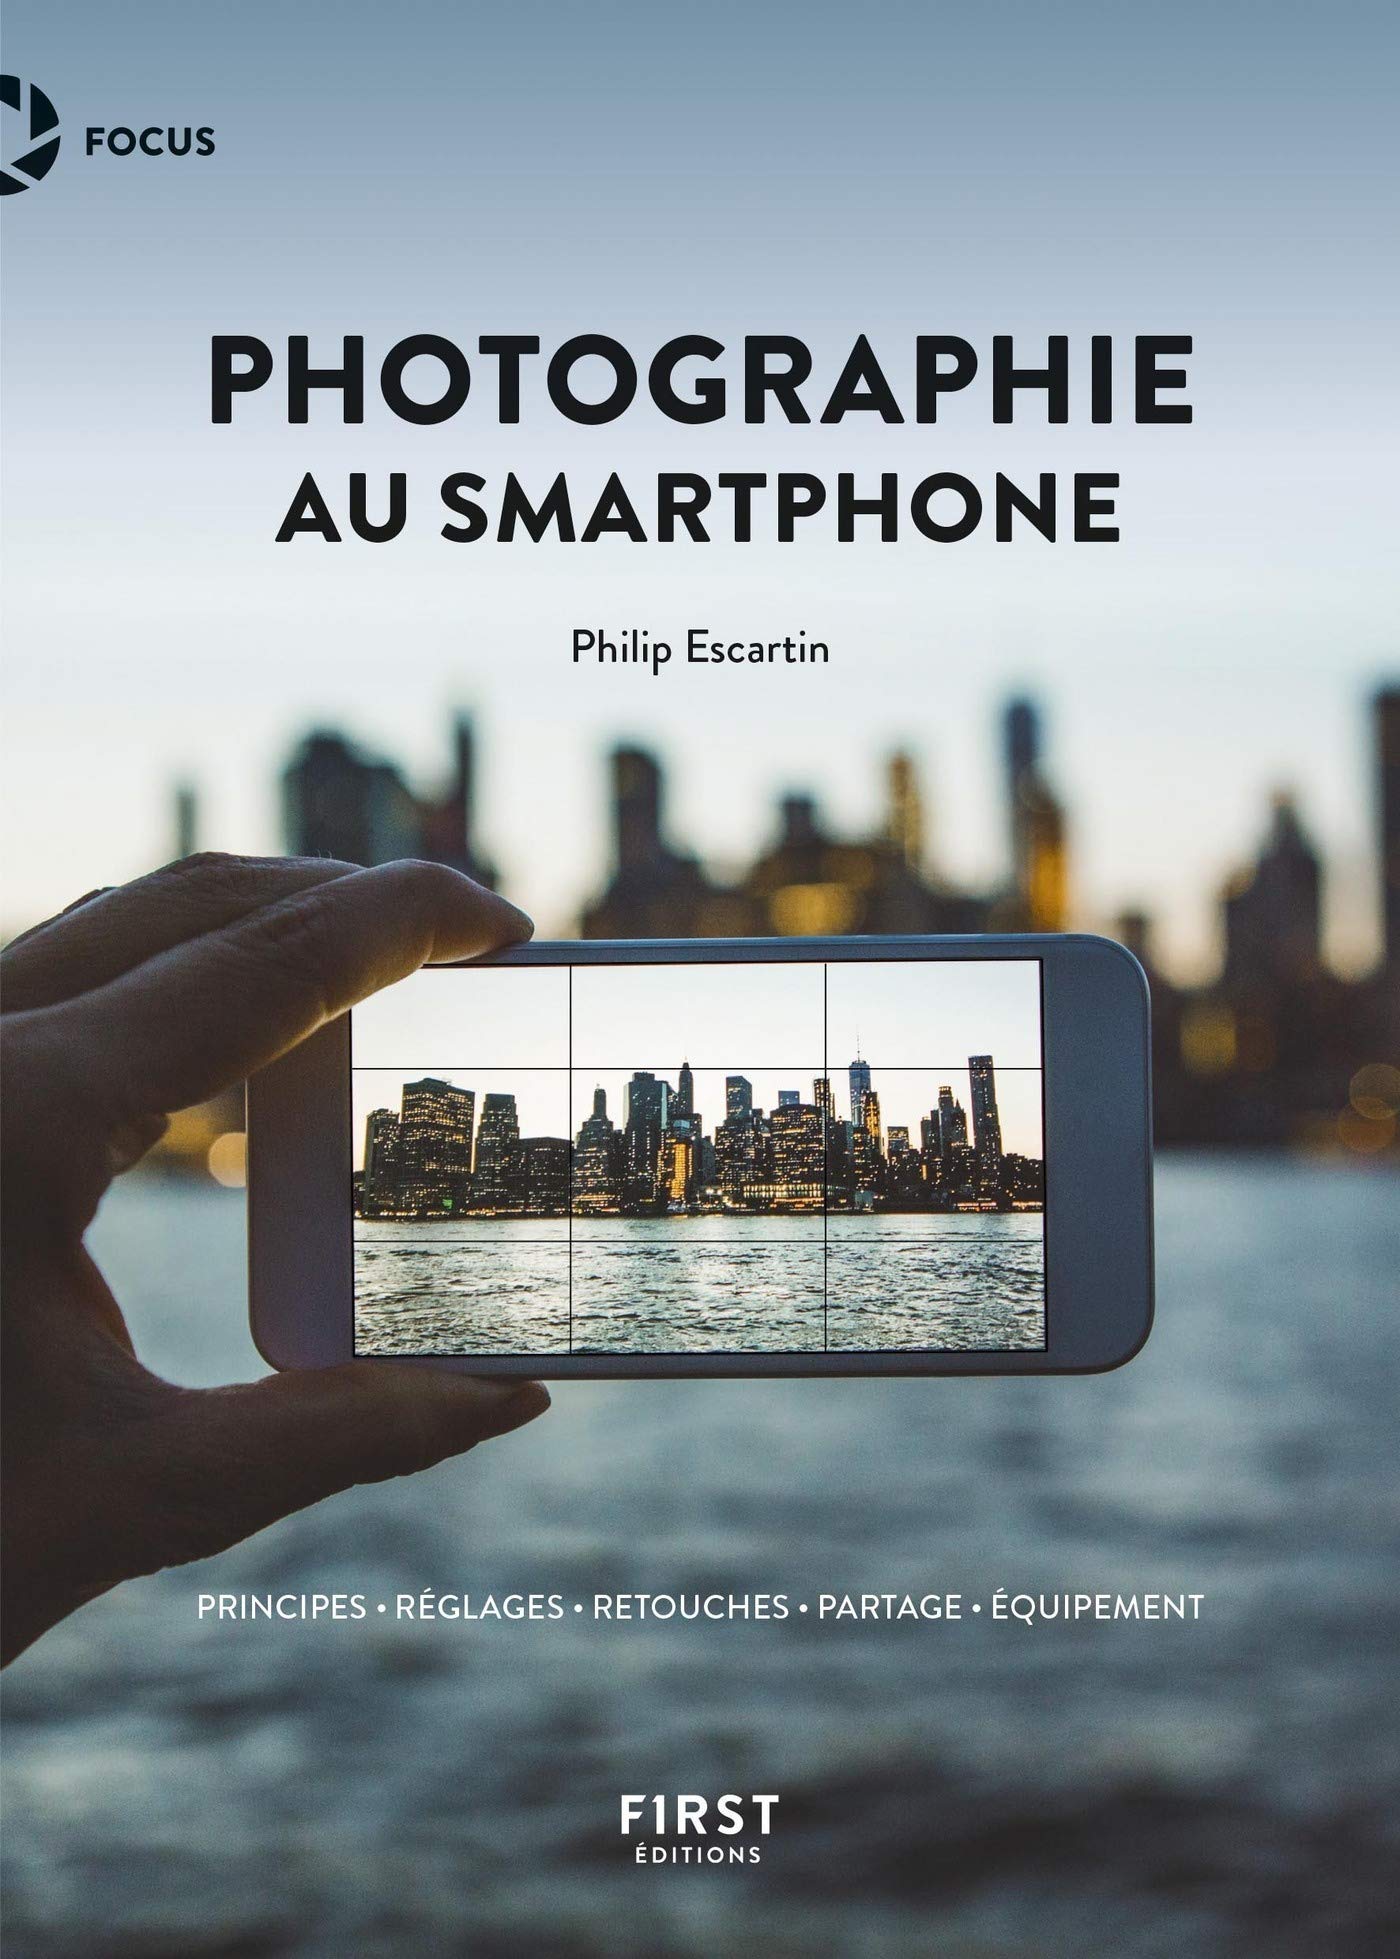 La photographie au smartphone (Focus) (French Edition)